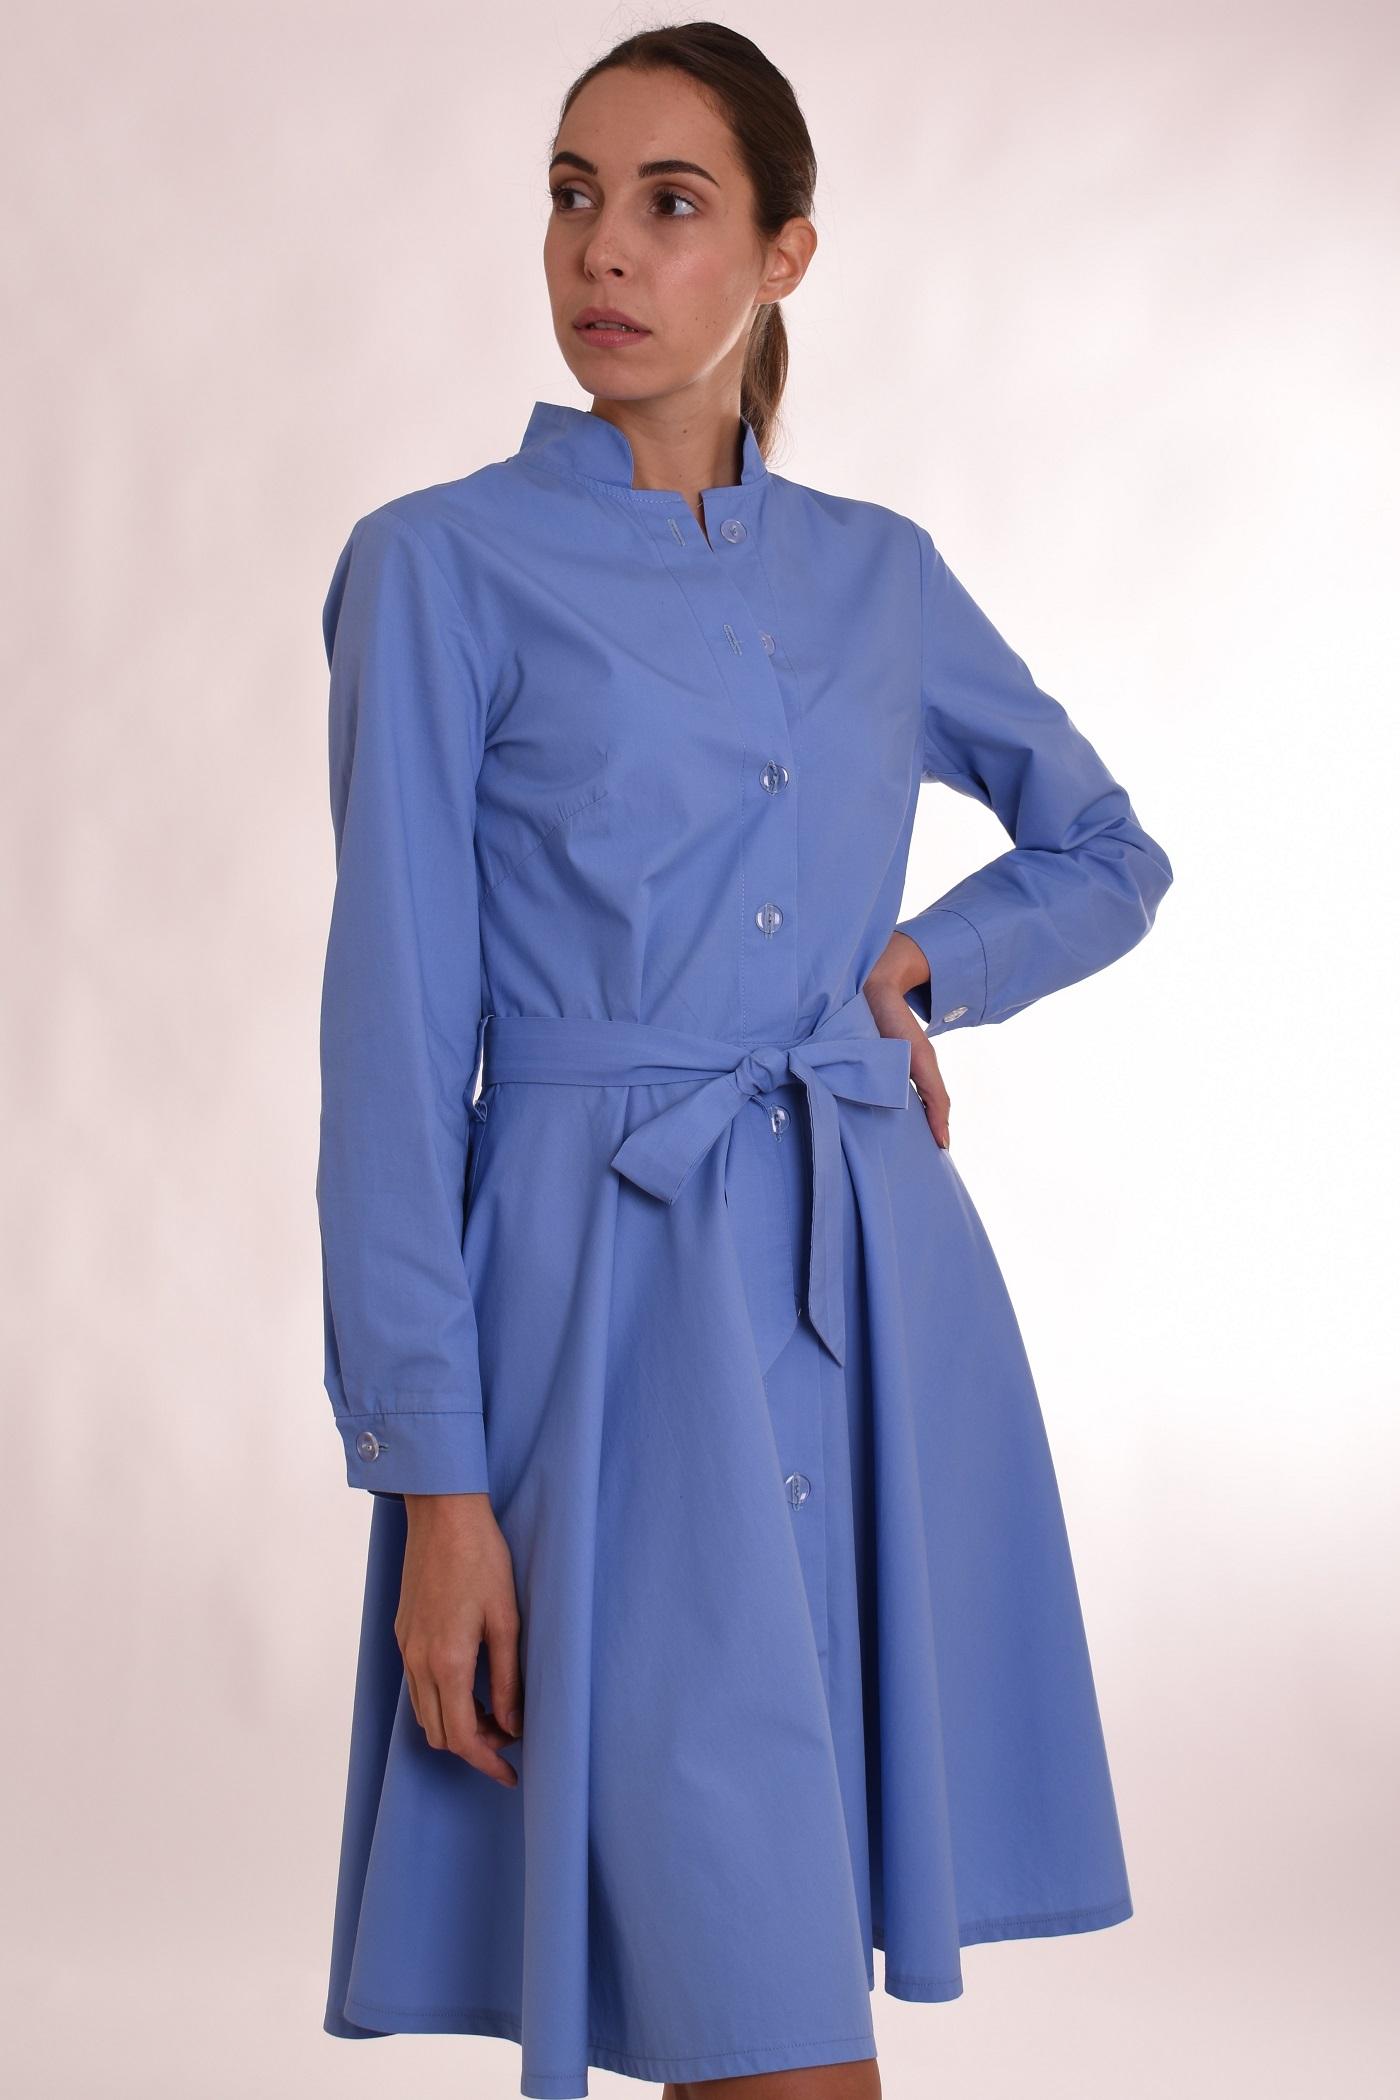 Selected image for PAMUKLIK Ženska haljina dugih rukava sa lepršavim donjim delom FUNKY plava